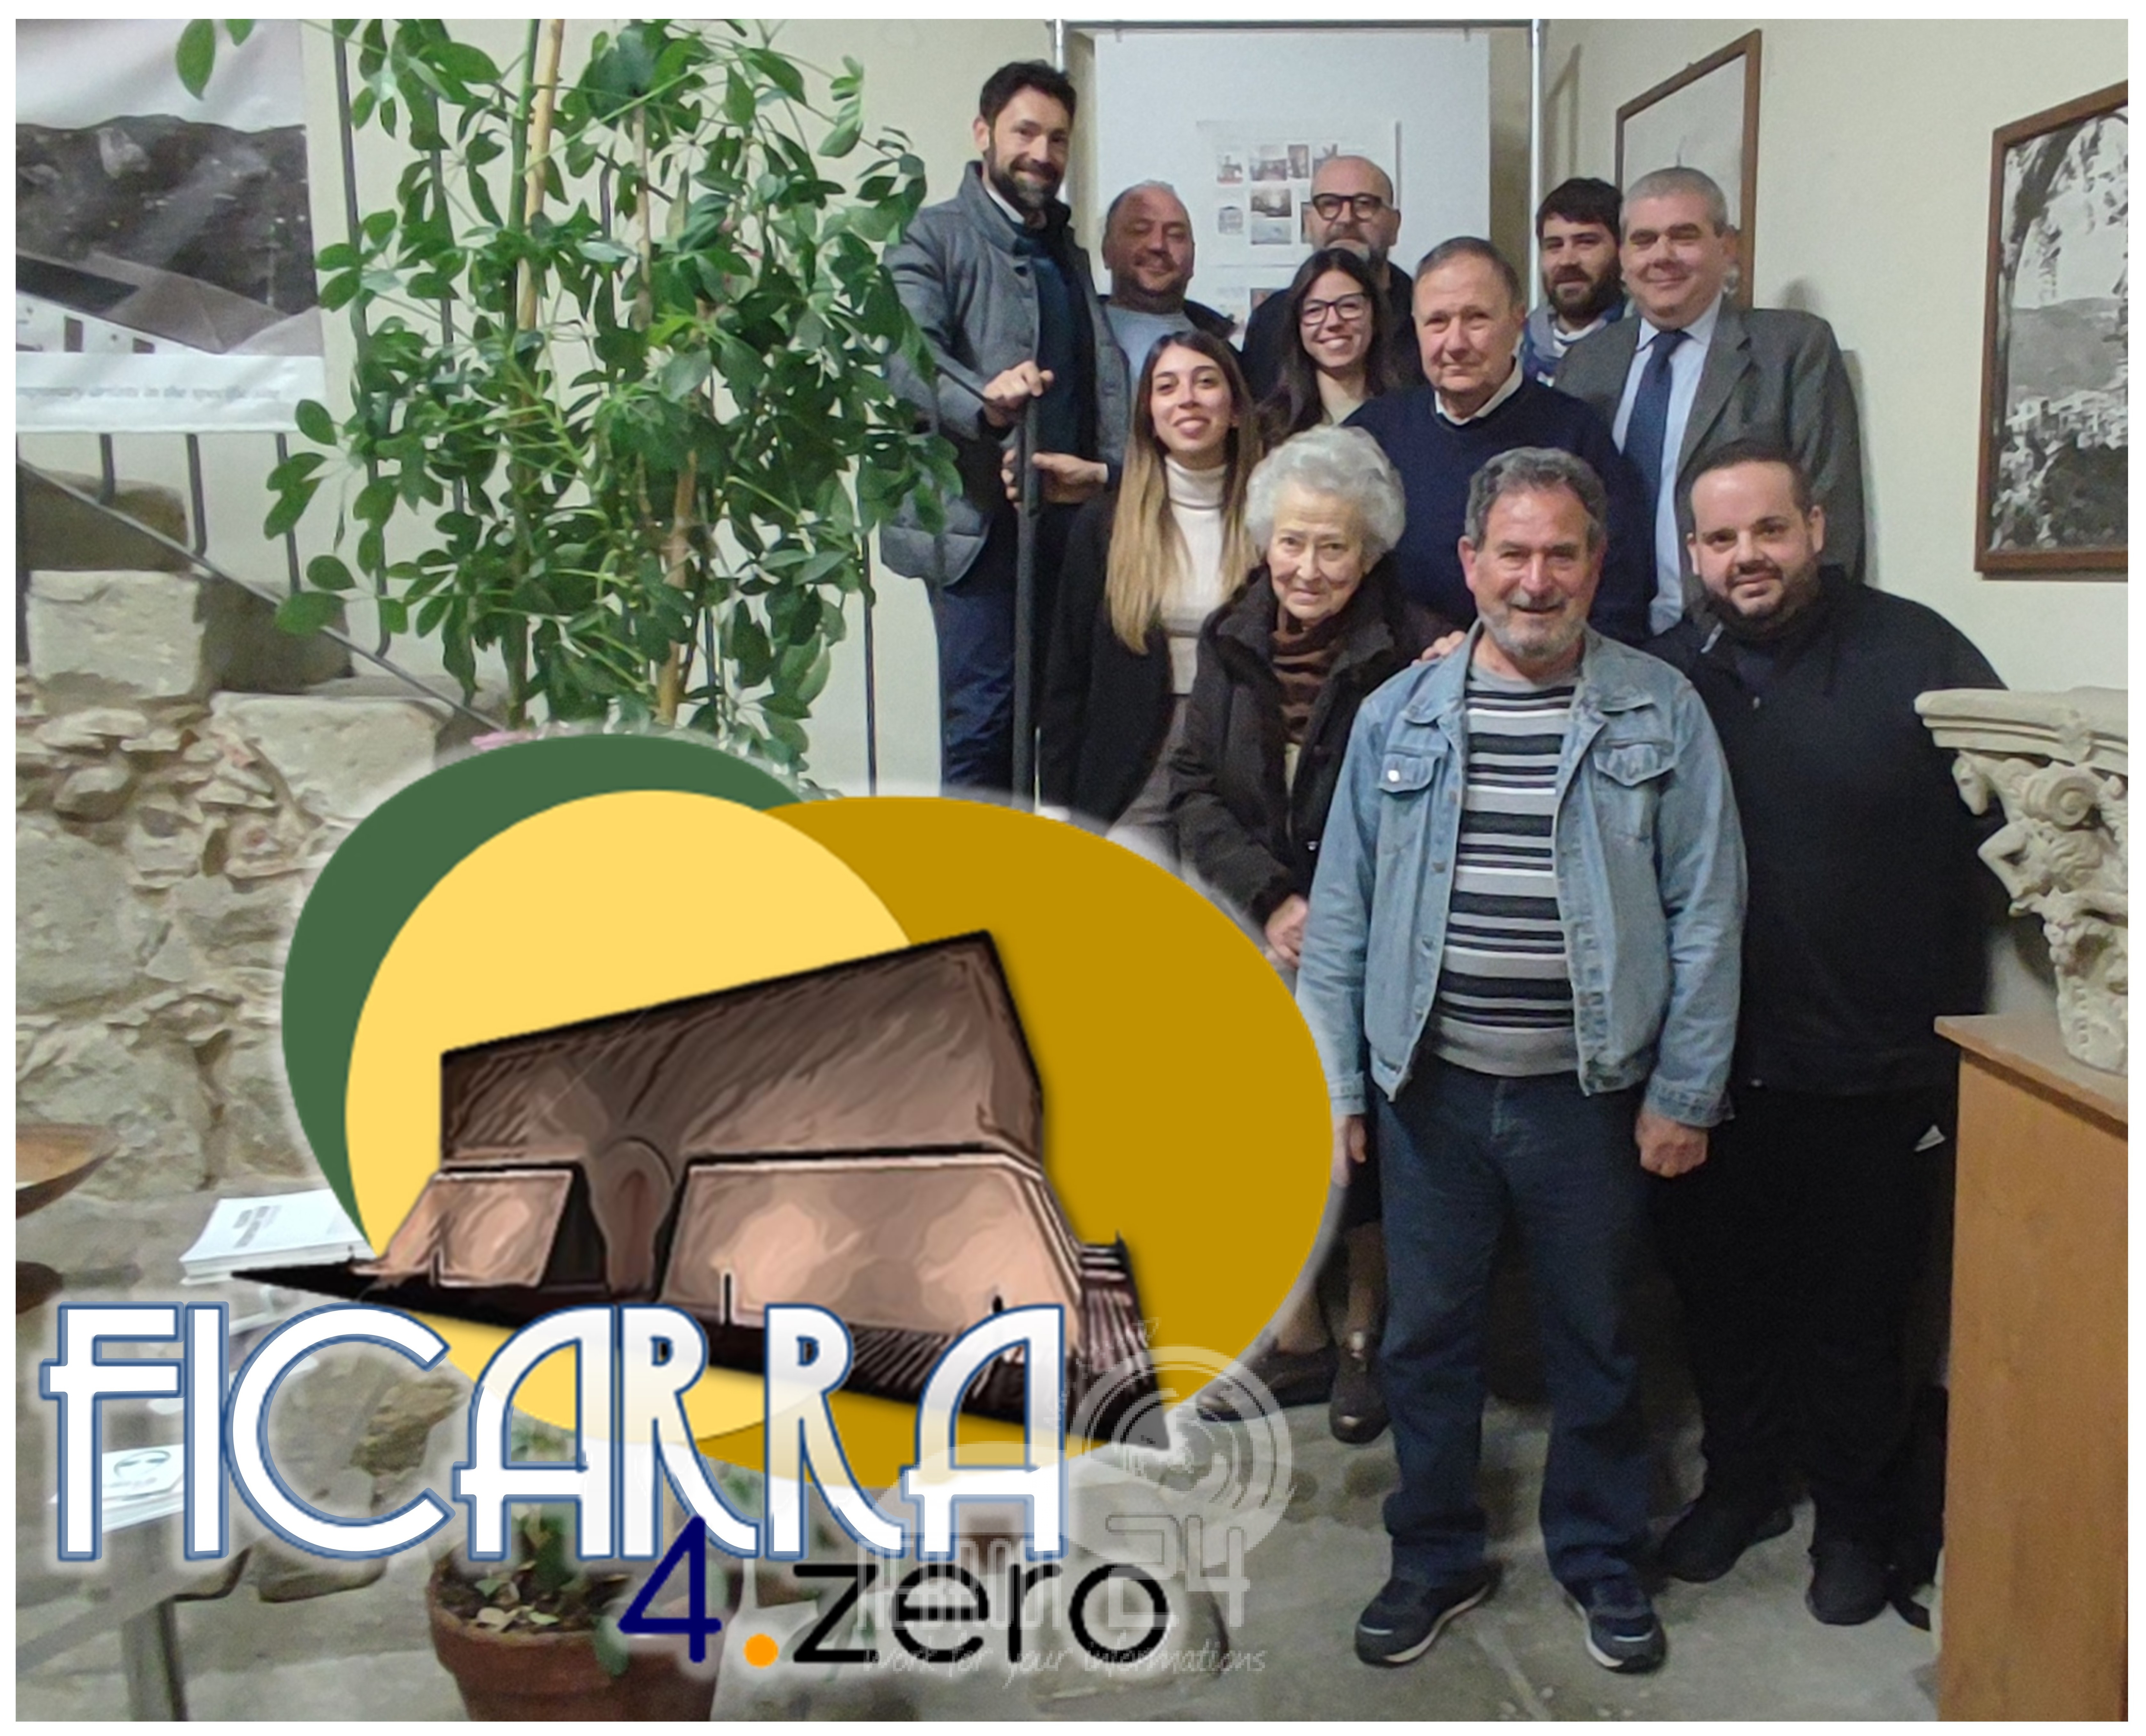 Ficarra – Al via il progetto 4.zero a sostegno della filiera corta e dei mercati locali a sostegno ad attività promozionali